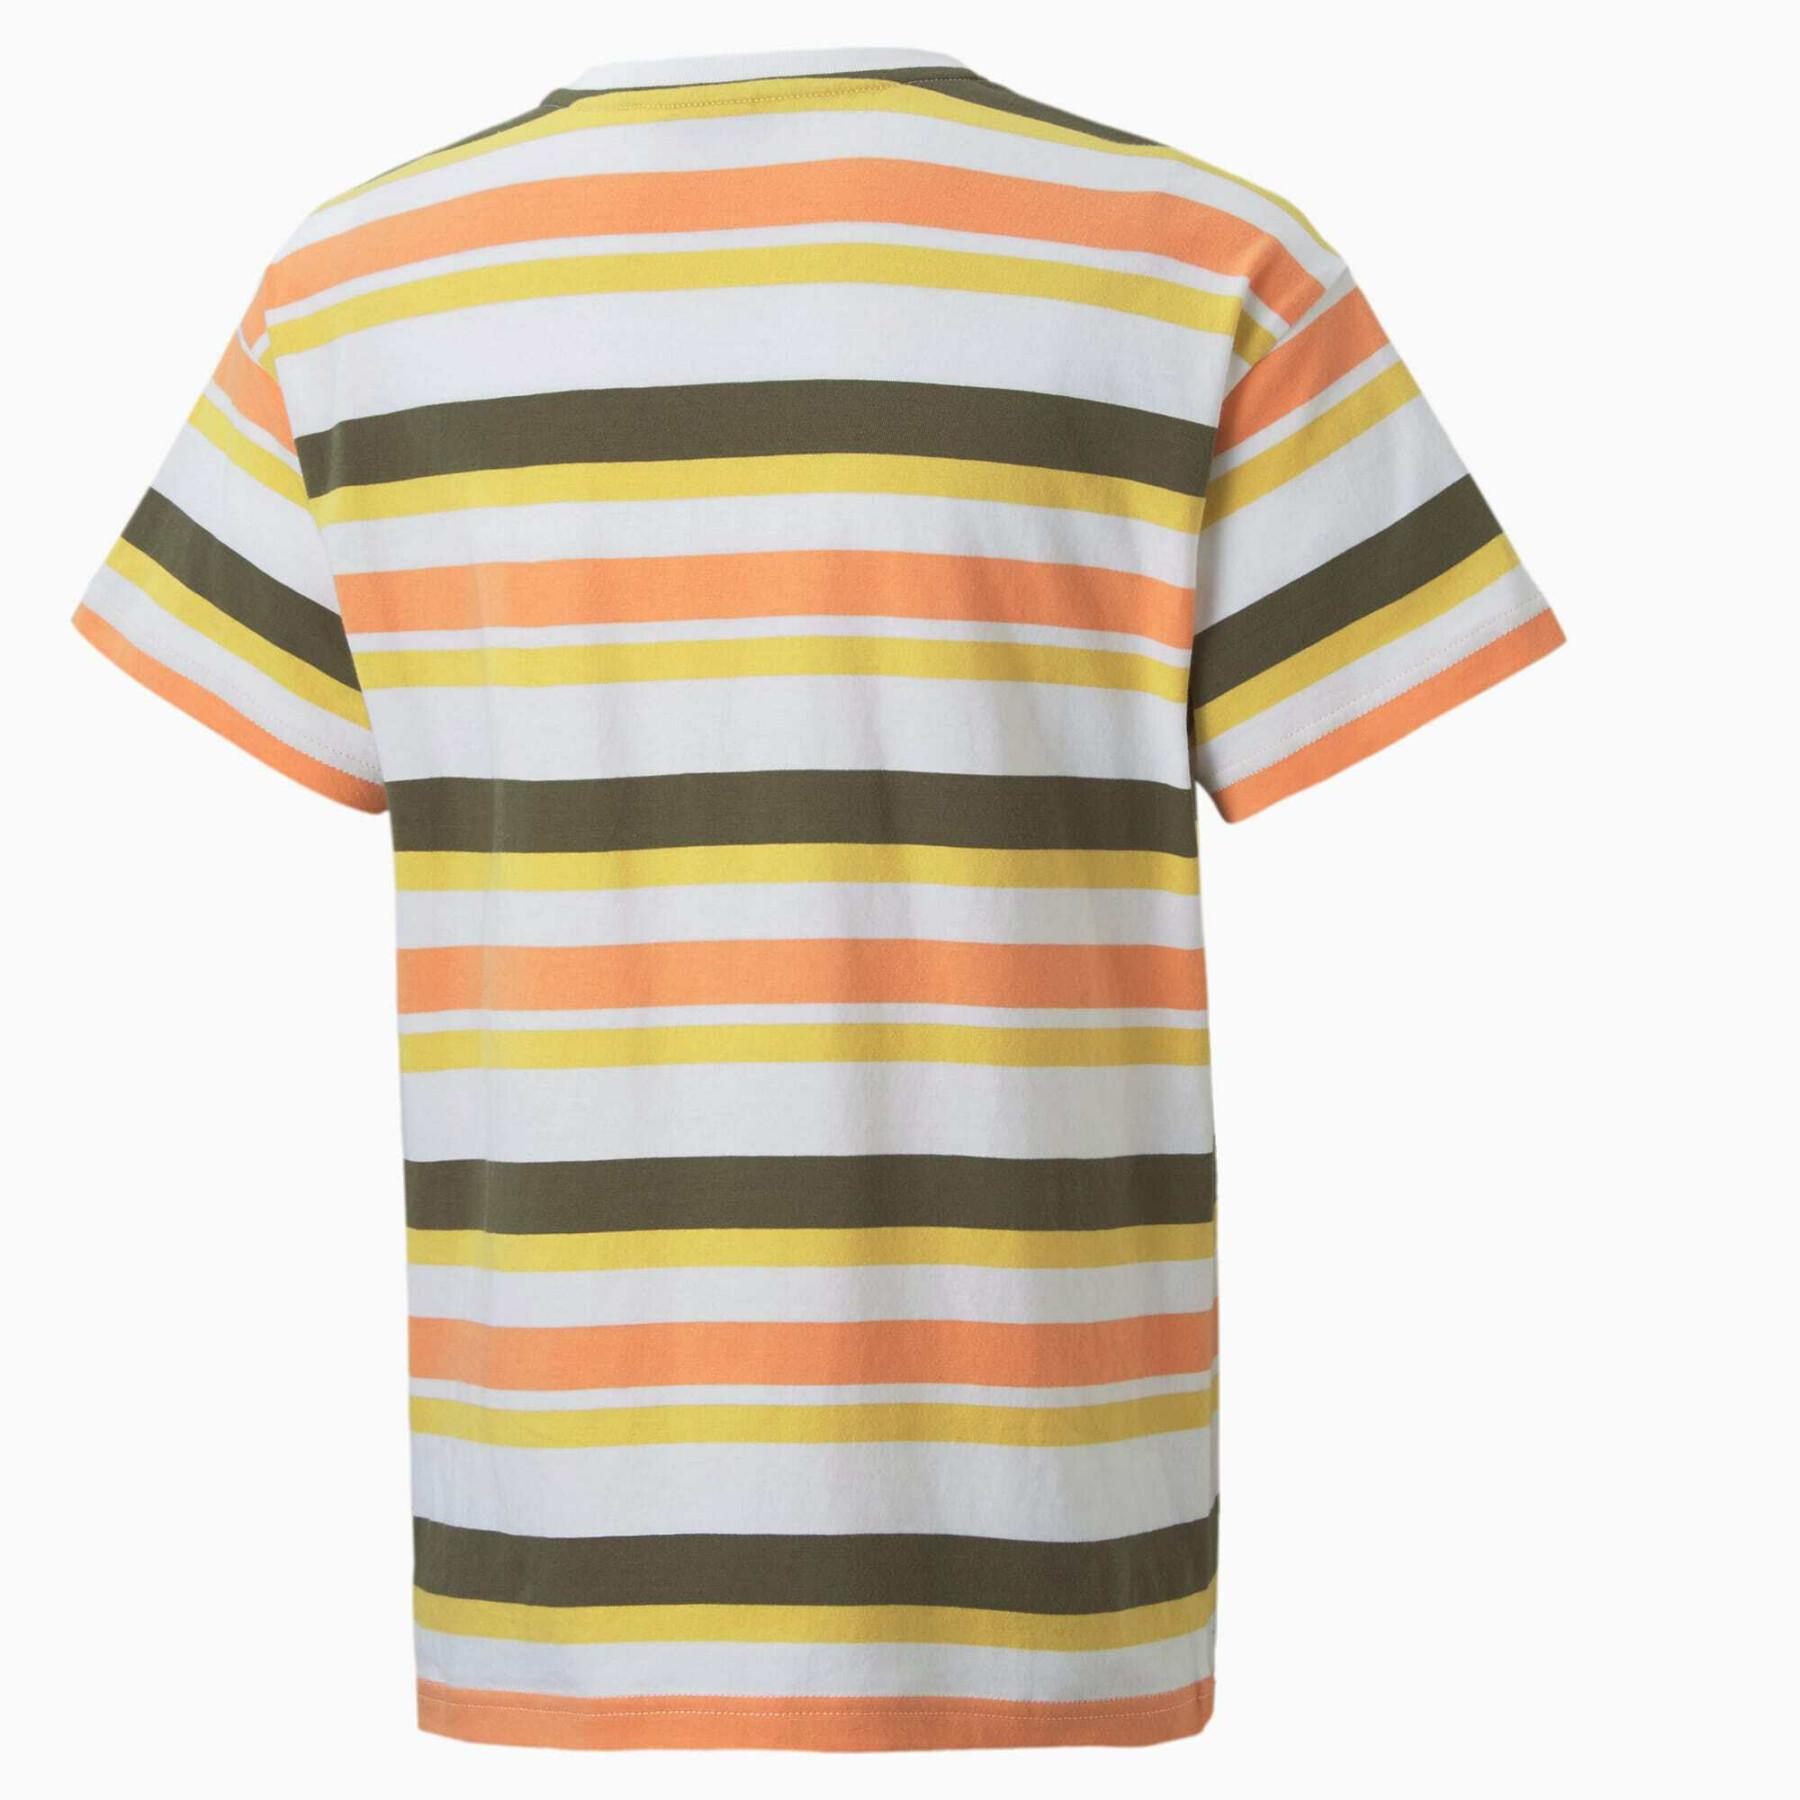 Kinder-T-shirt Puma Alpha Striped